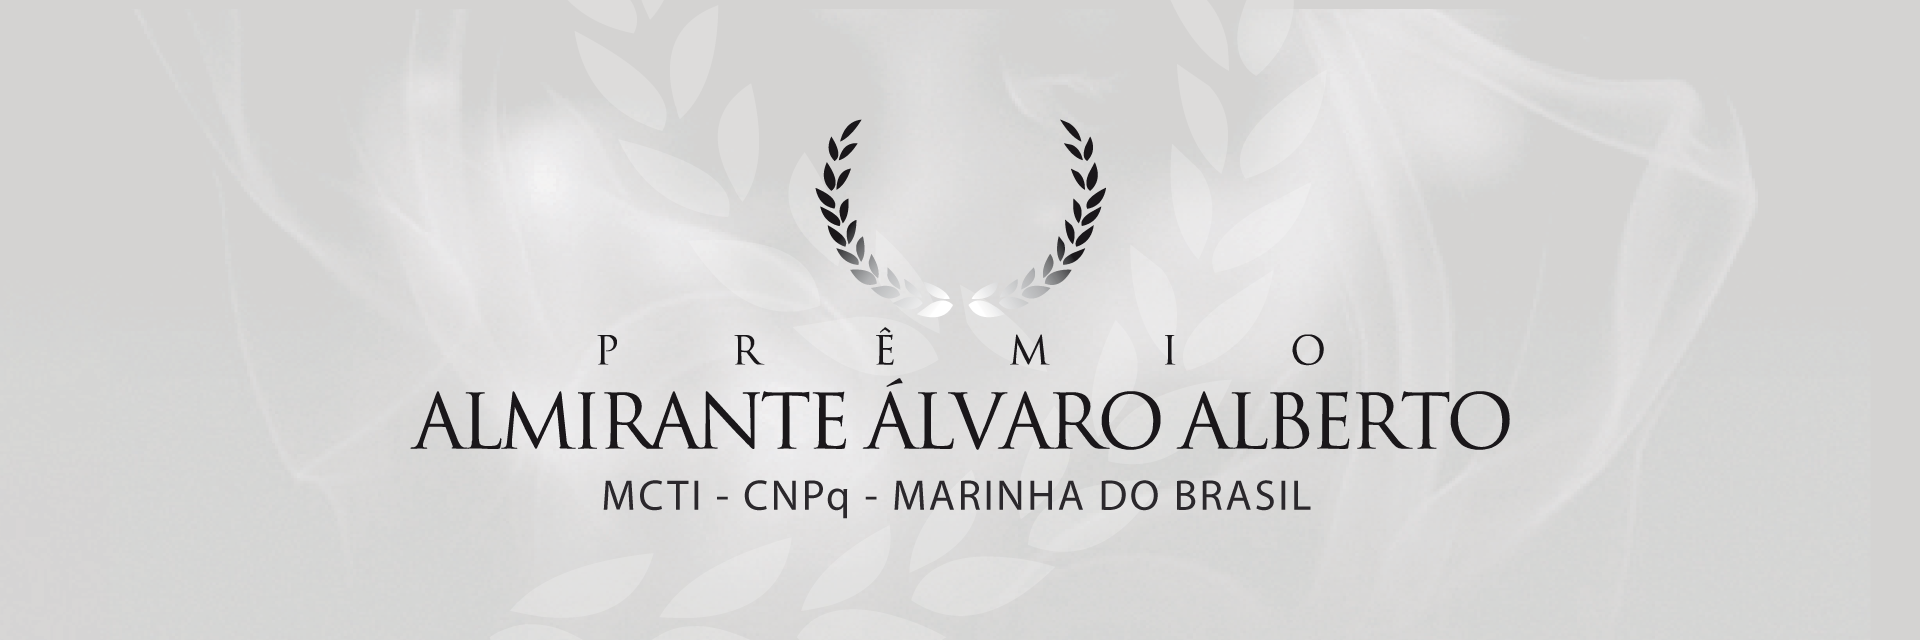 Prêmio Almirante Álvaro Alberto MCTI - CNPq - Marinha do Brasil